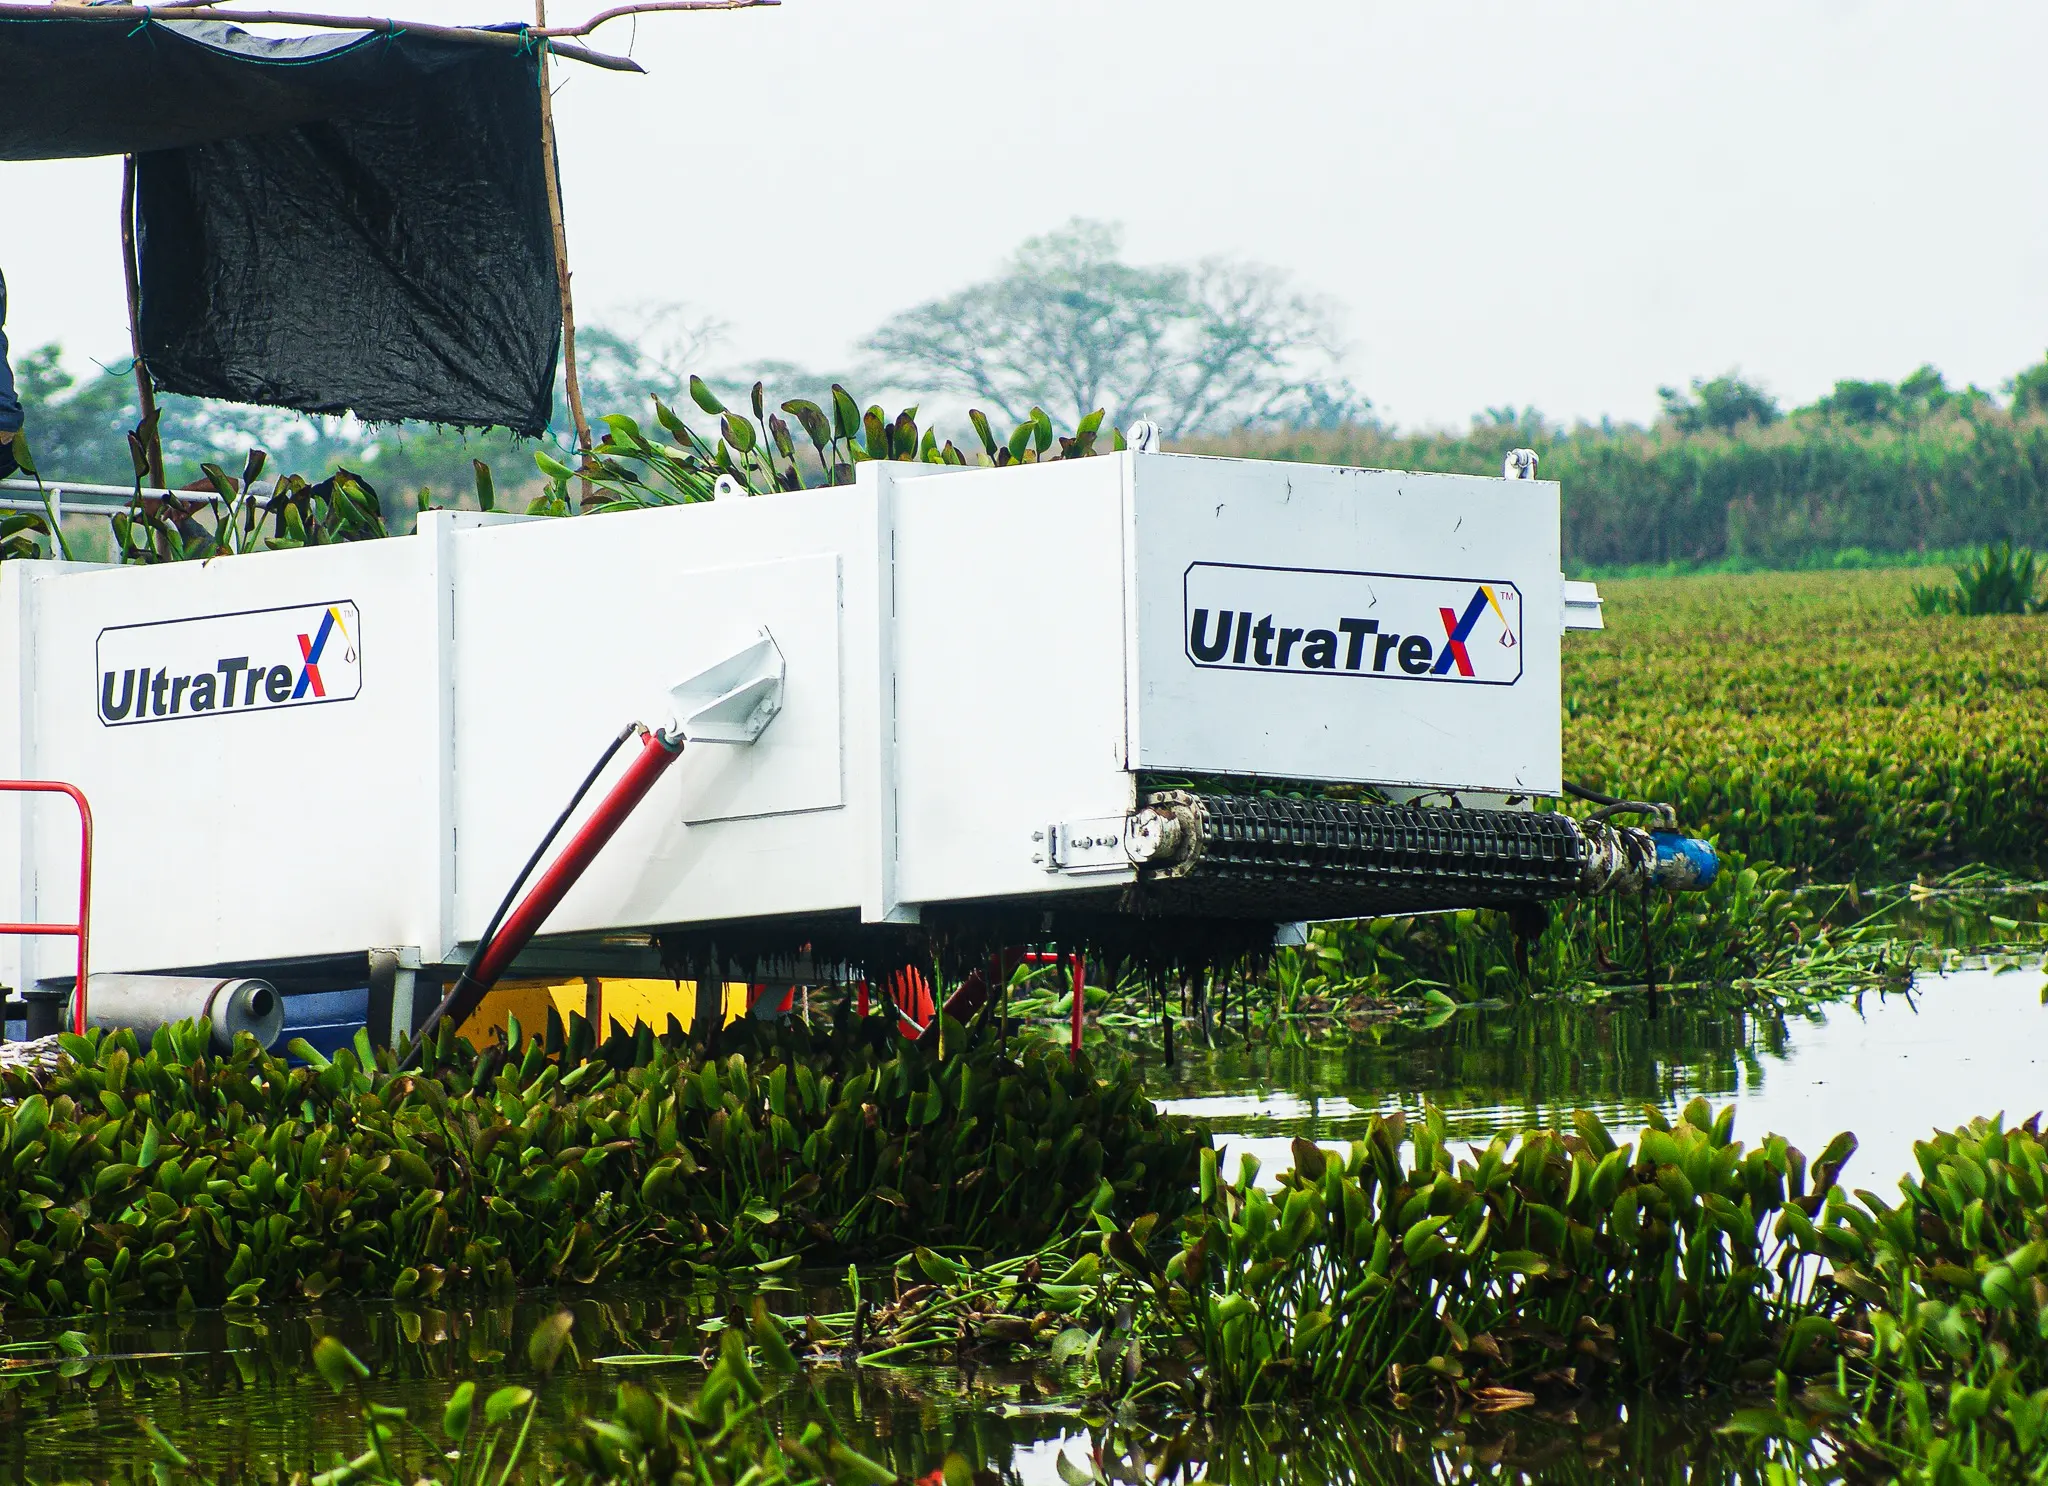 Ultratrex aquatic weed harvester is harvesting the water hyacinth on the lakes at Kg Makmur, Tanjung Tualang, Perak